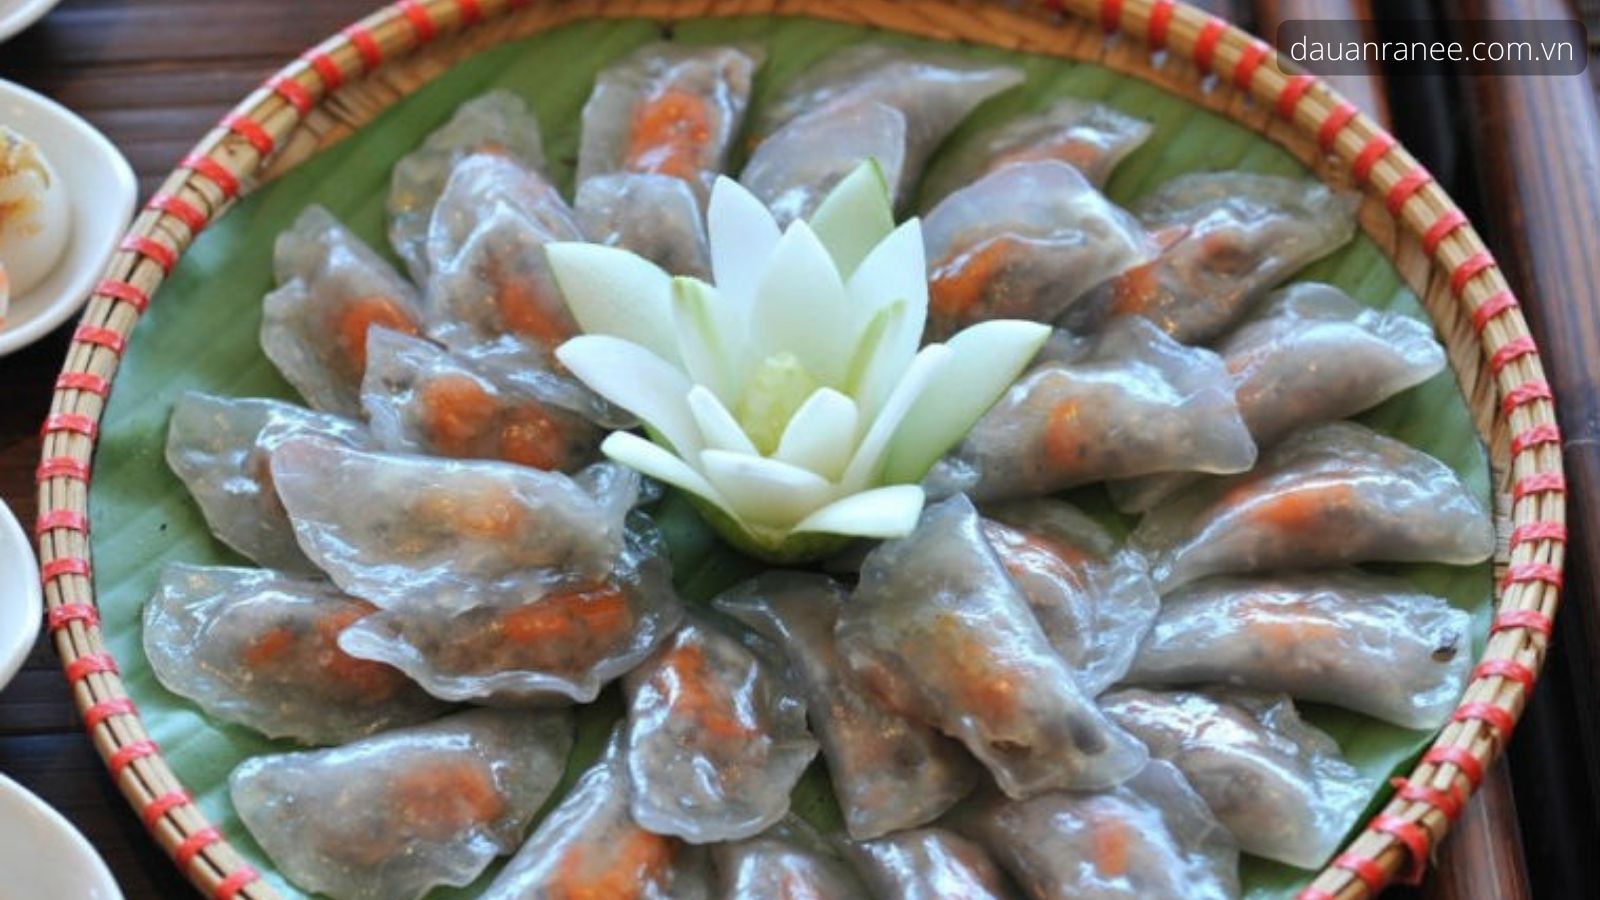 Đặc sản của Hà Tĩnh - Bánh bèo món ngon đặc sản hấp dẫn mà giản dị